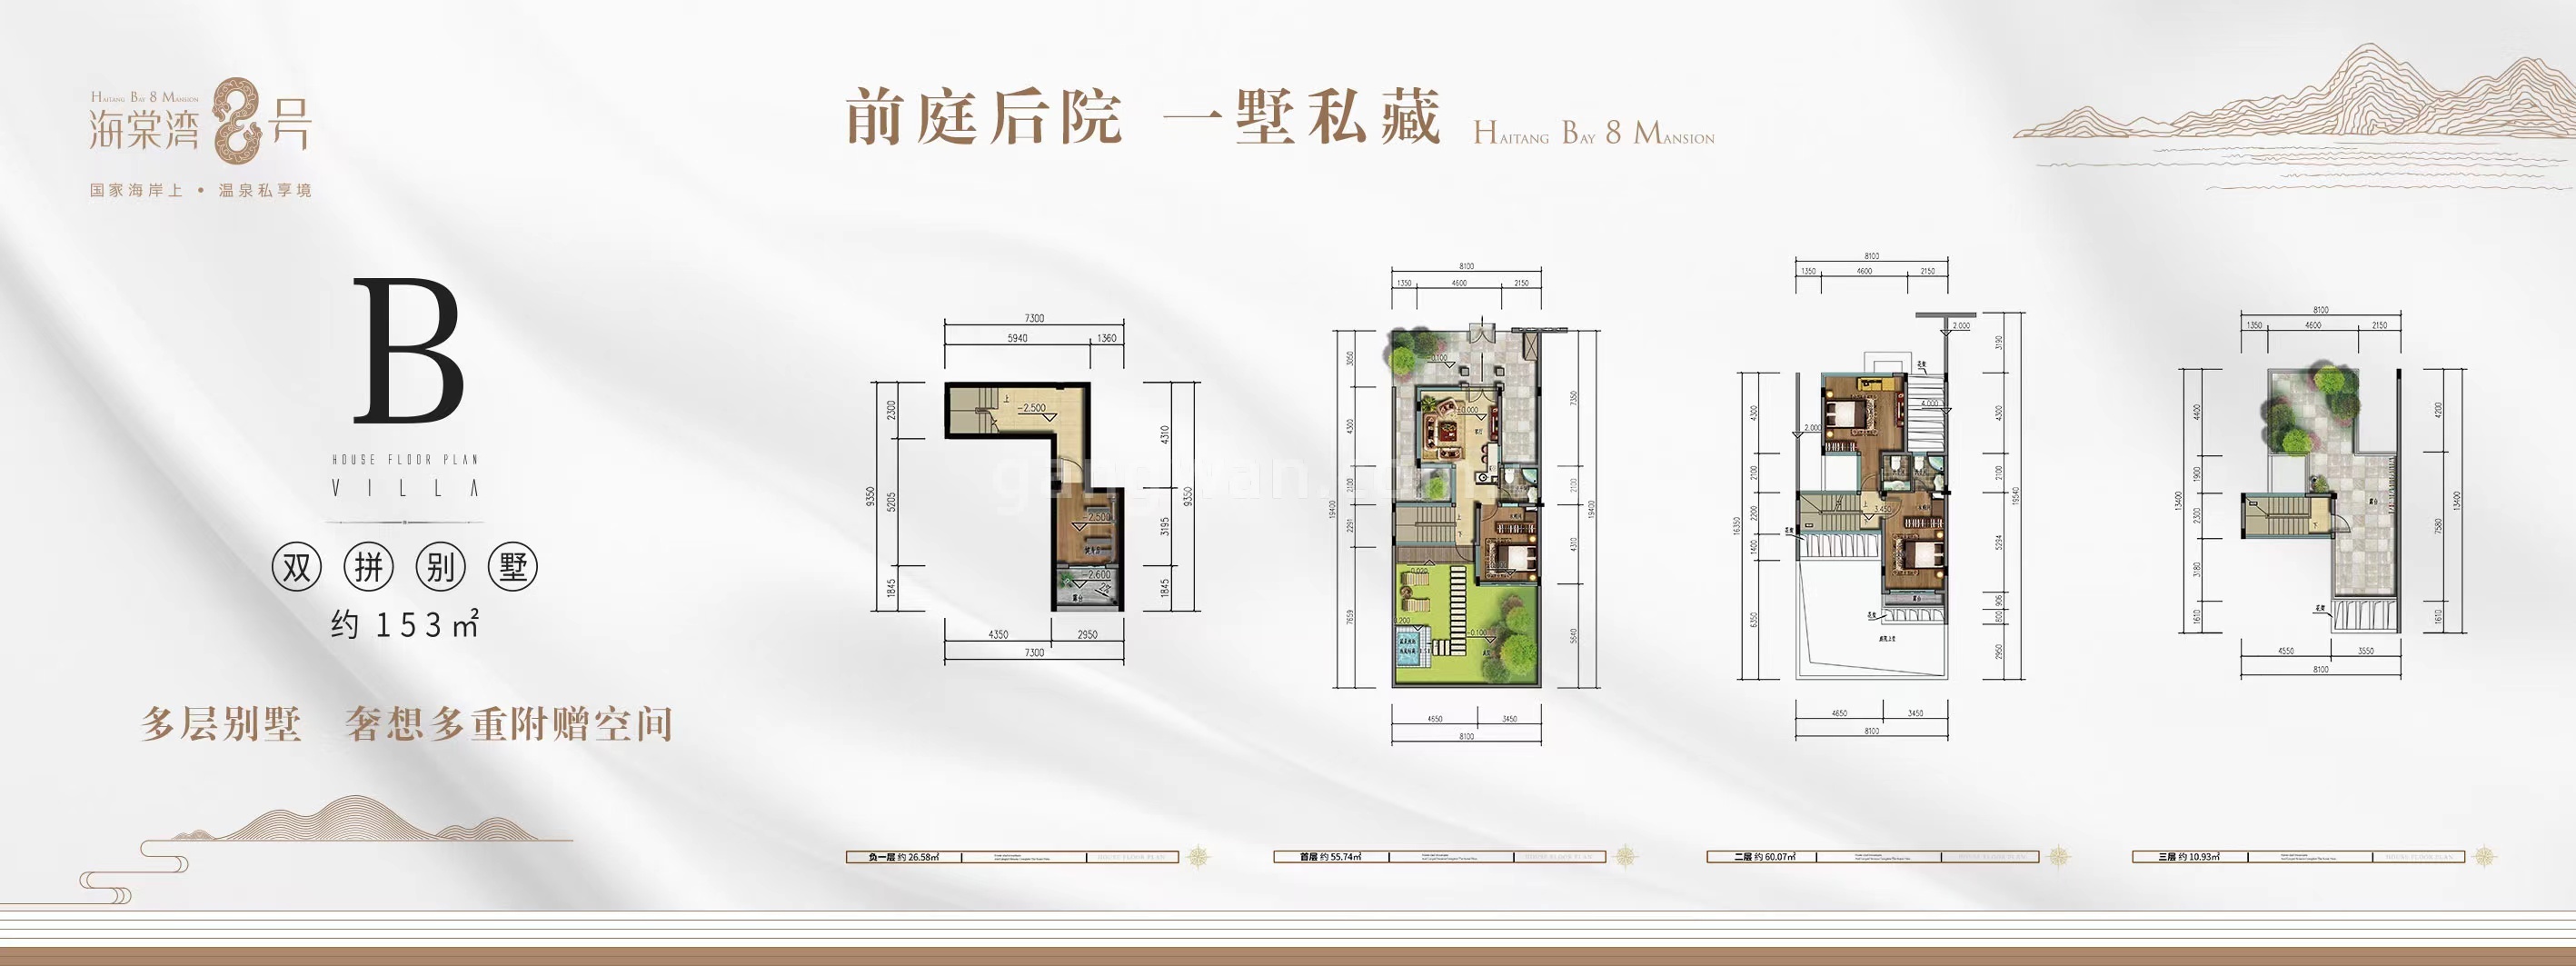 海棠湾8号温泉公馆 双拼 B户型 建筑面积153㎡ 可使用面积370㎡ 4房2厅5卫